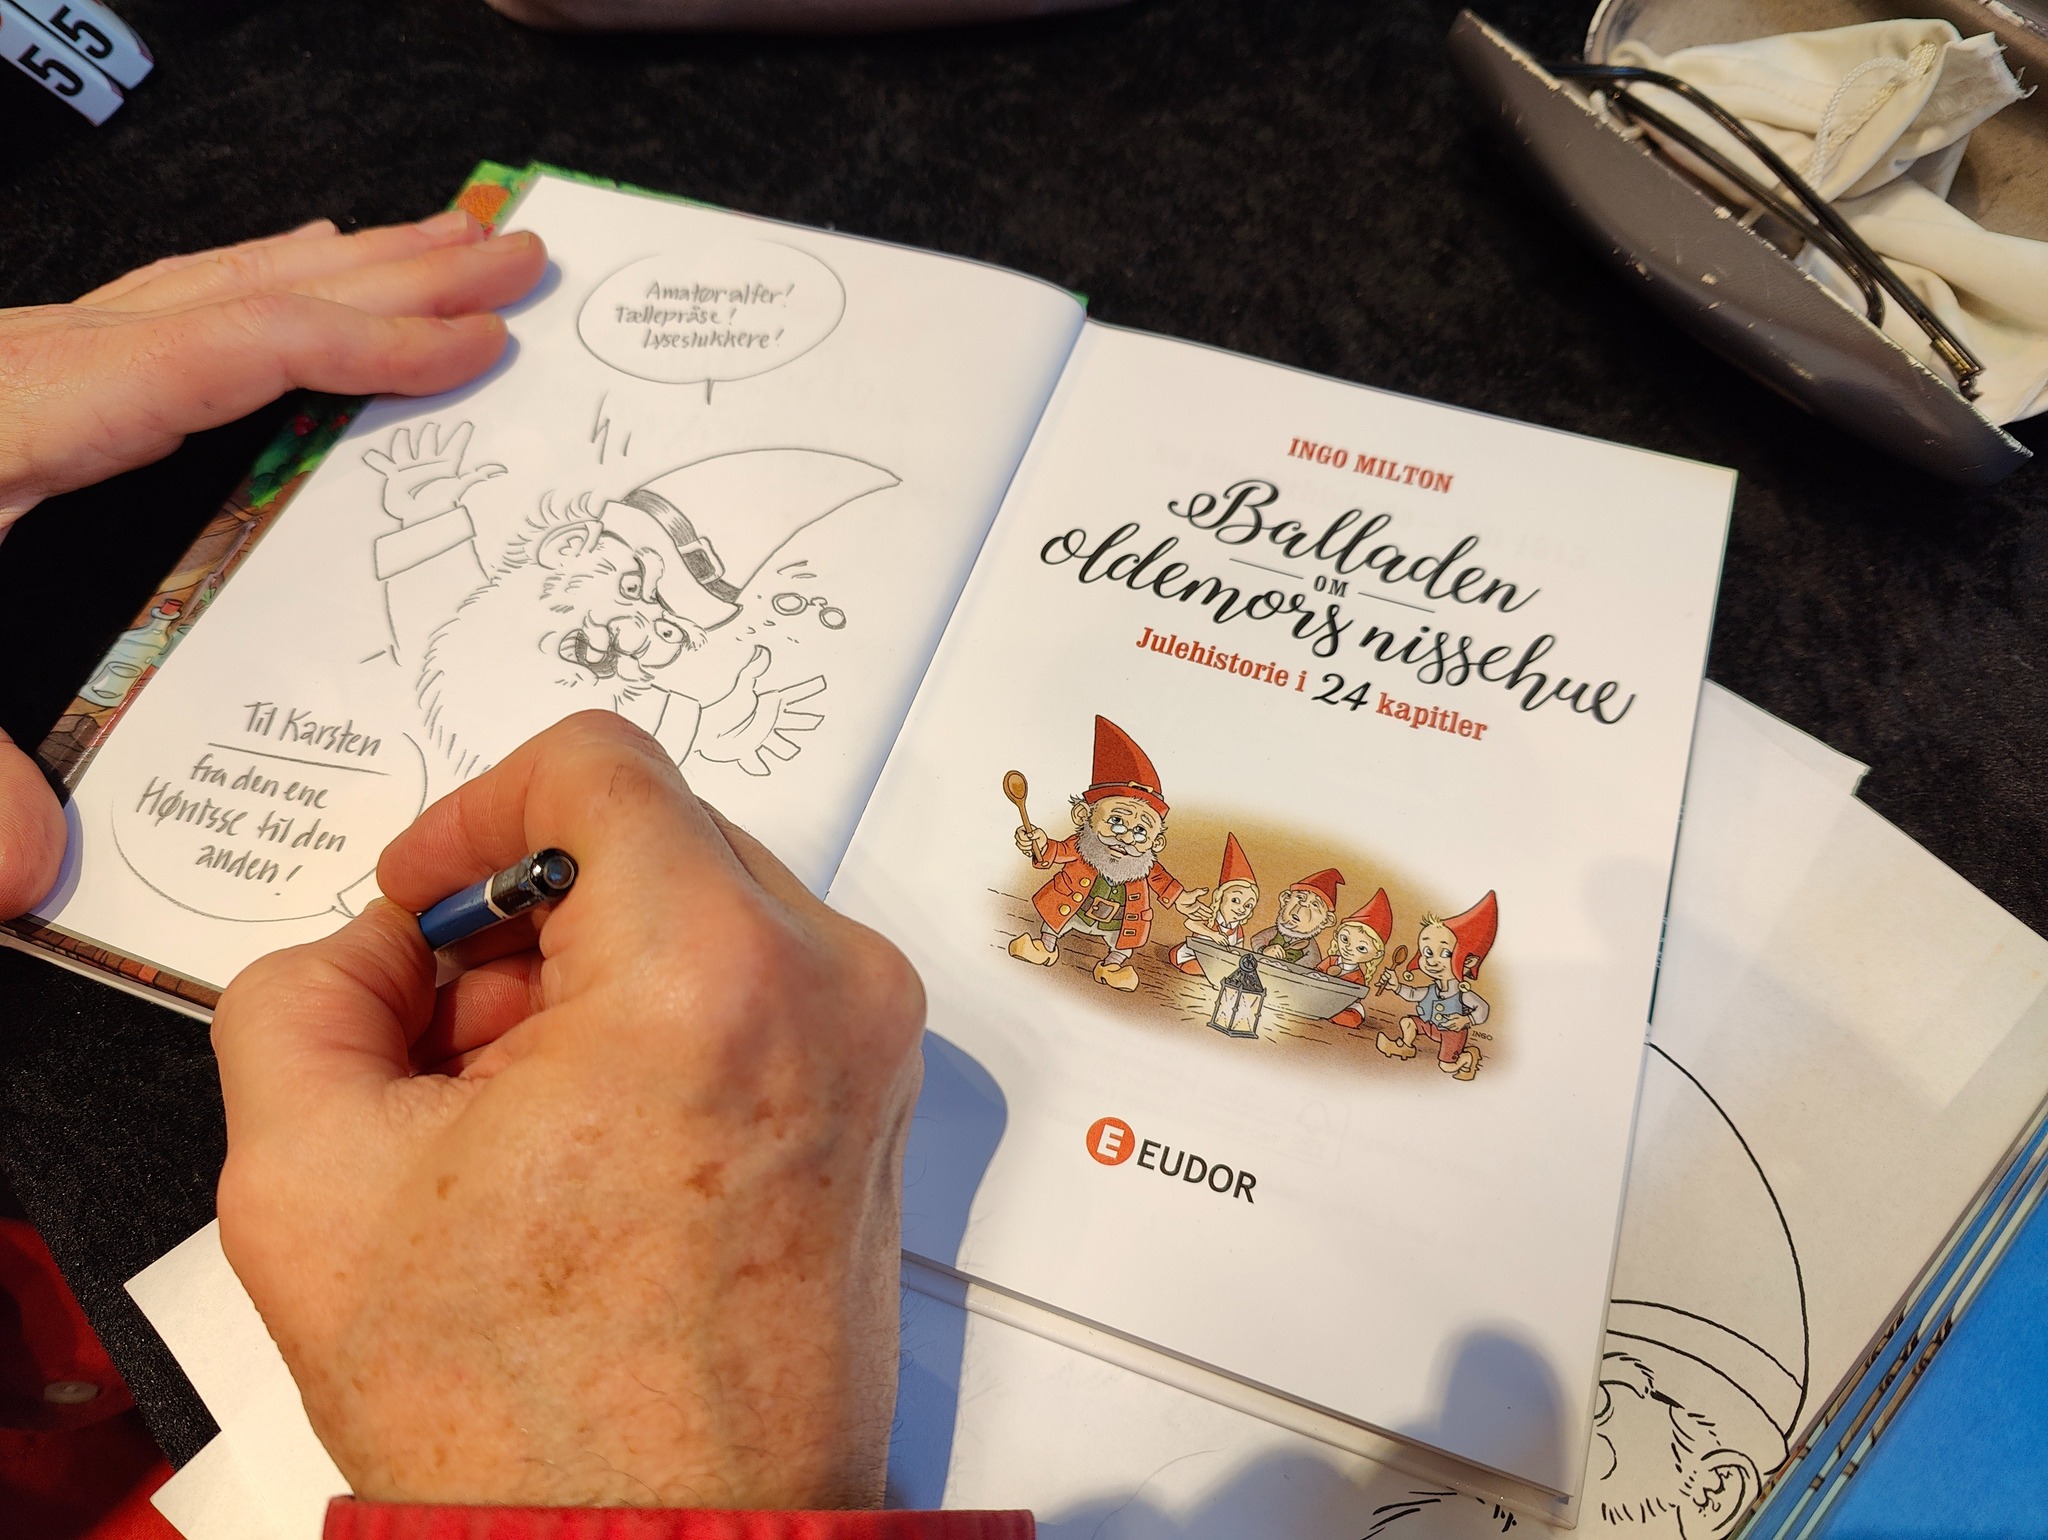 Ingo Milton signerer sin julekalenderbog "Jagten på oldemors nissehue" på Bogforum